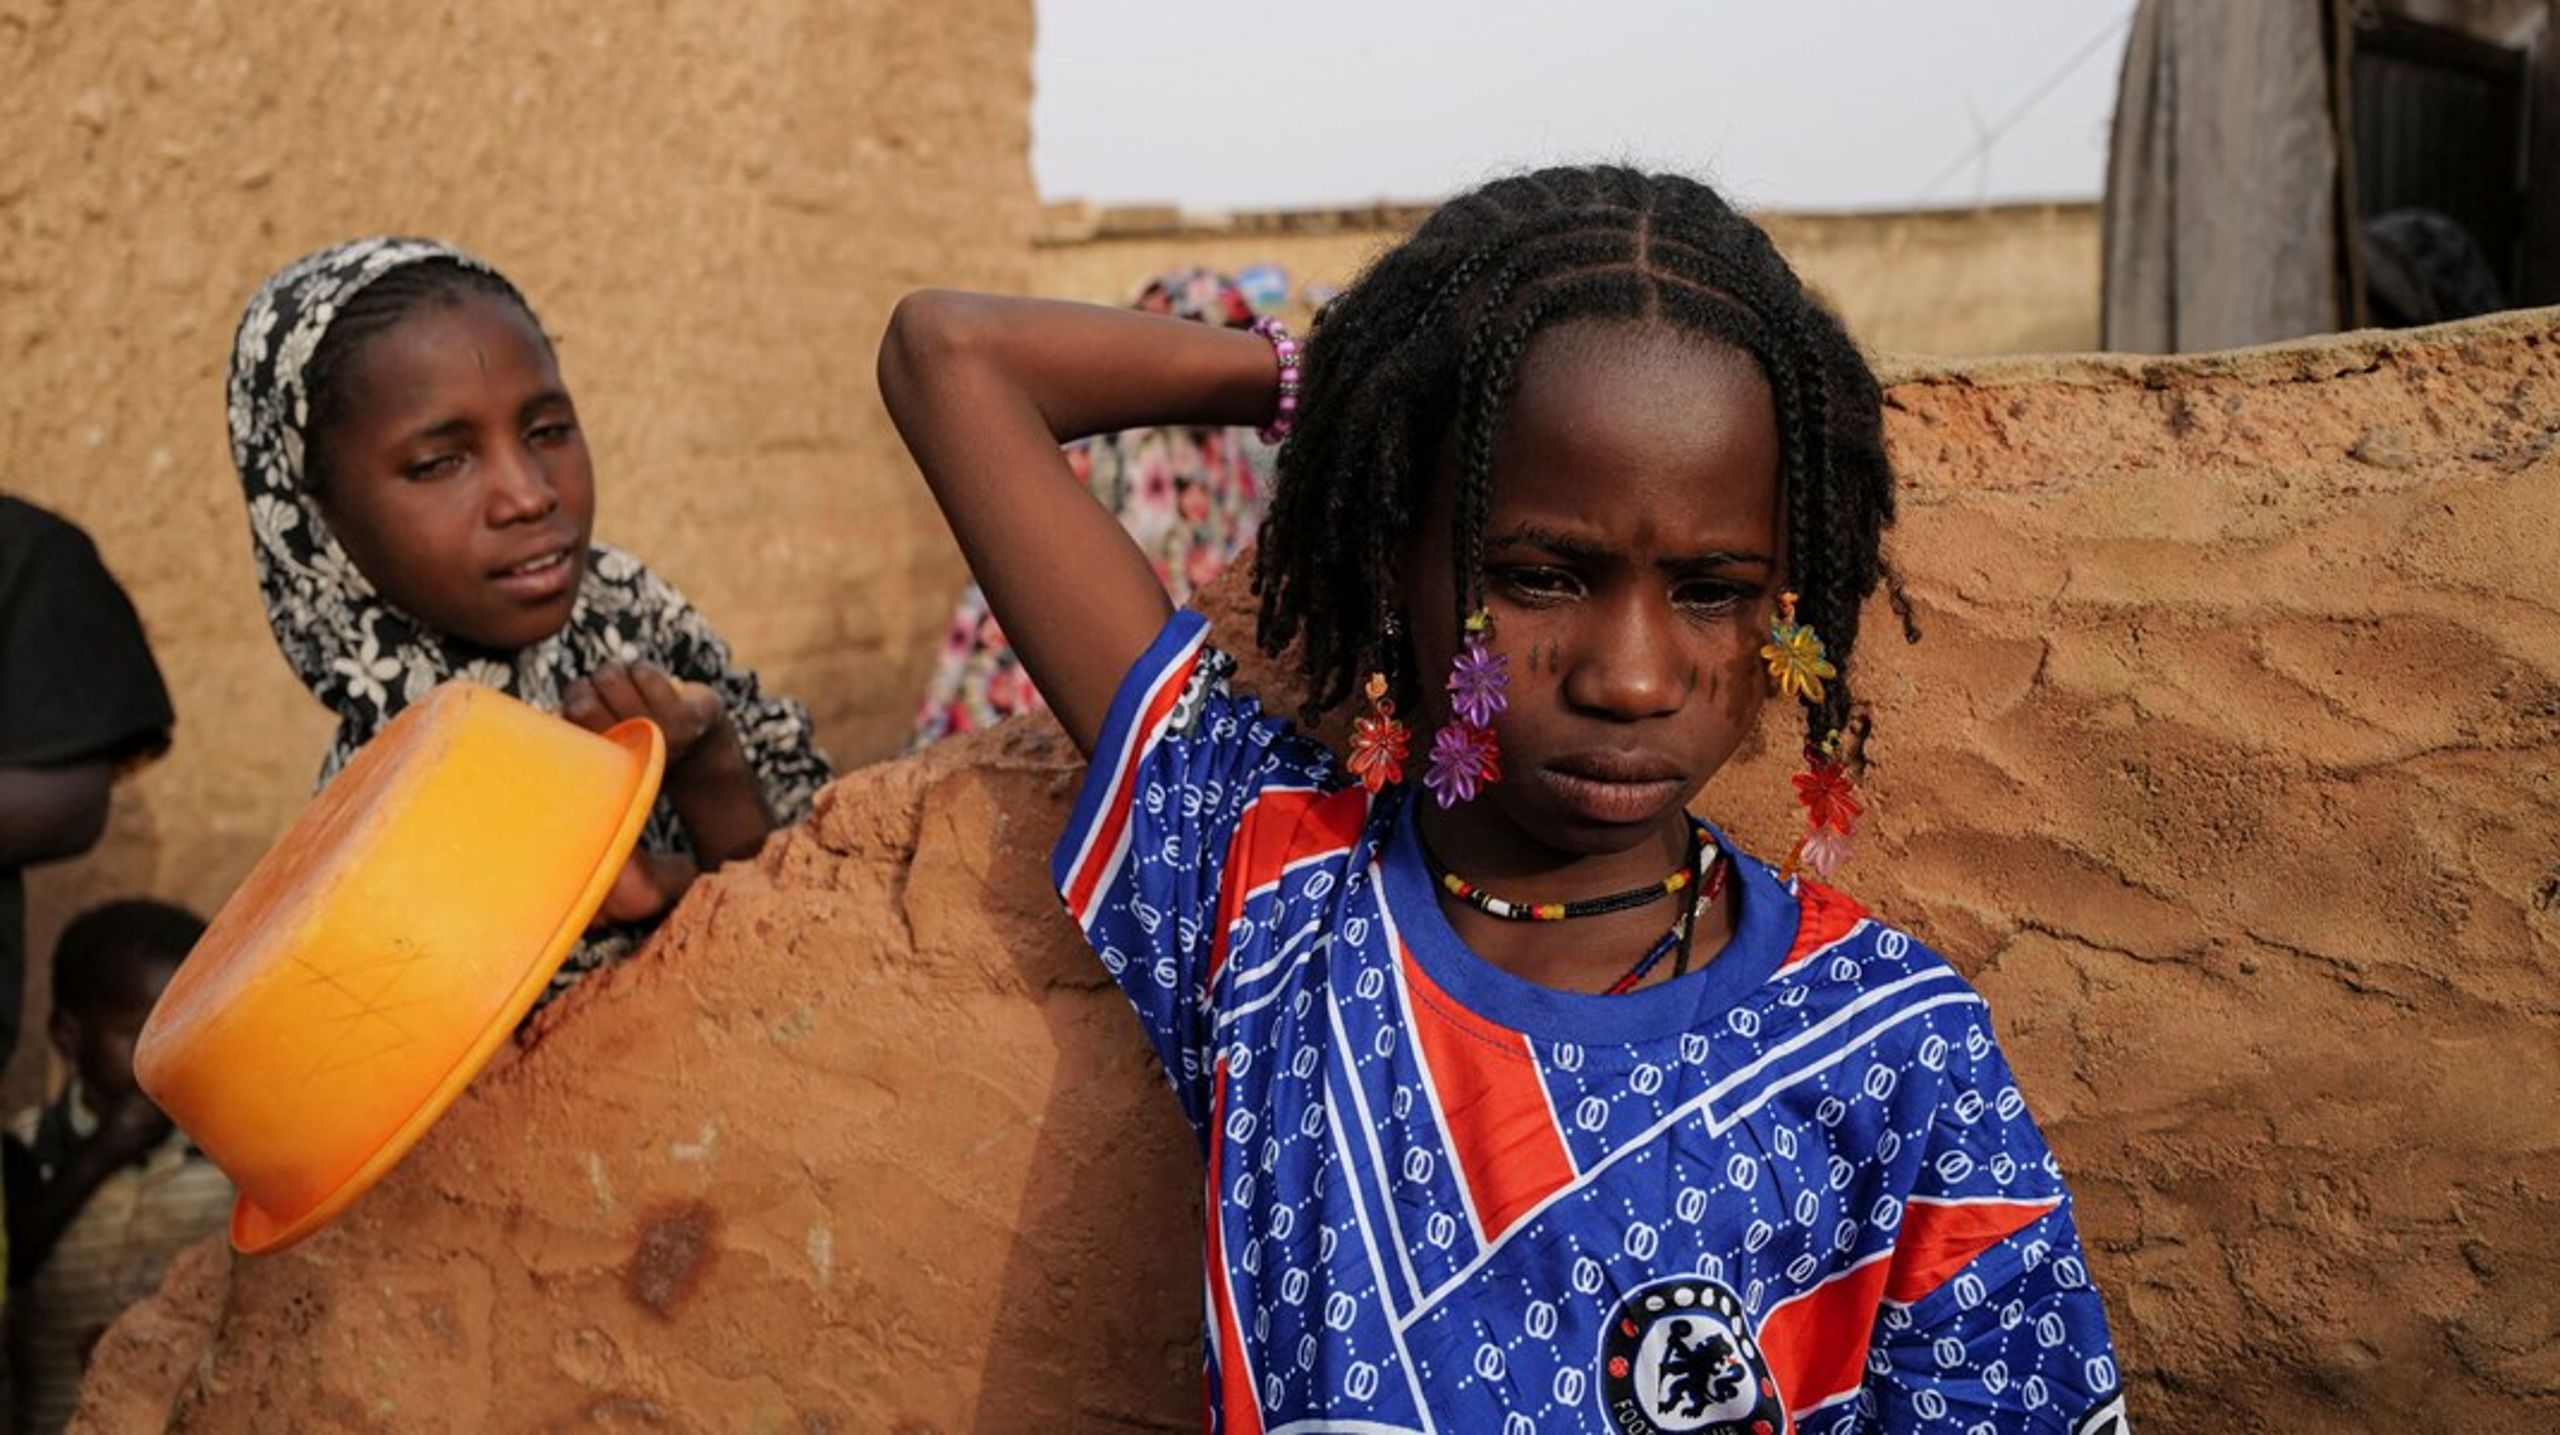 Det anslås, at 10.000 børn i Burkina Faso vil opleve den værste form for sult inden for de næste seks måneder, skriver&nbsp;Jakob Eilsøe Mikkelsen. Arkivfoto.